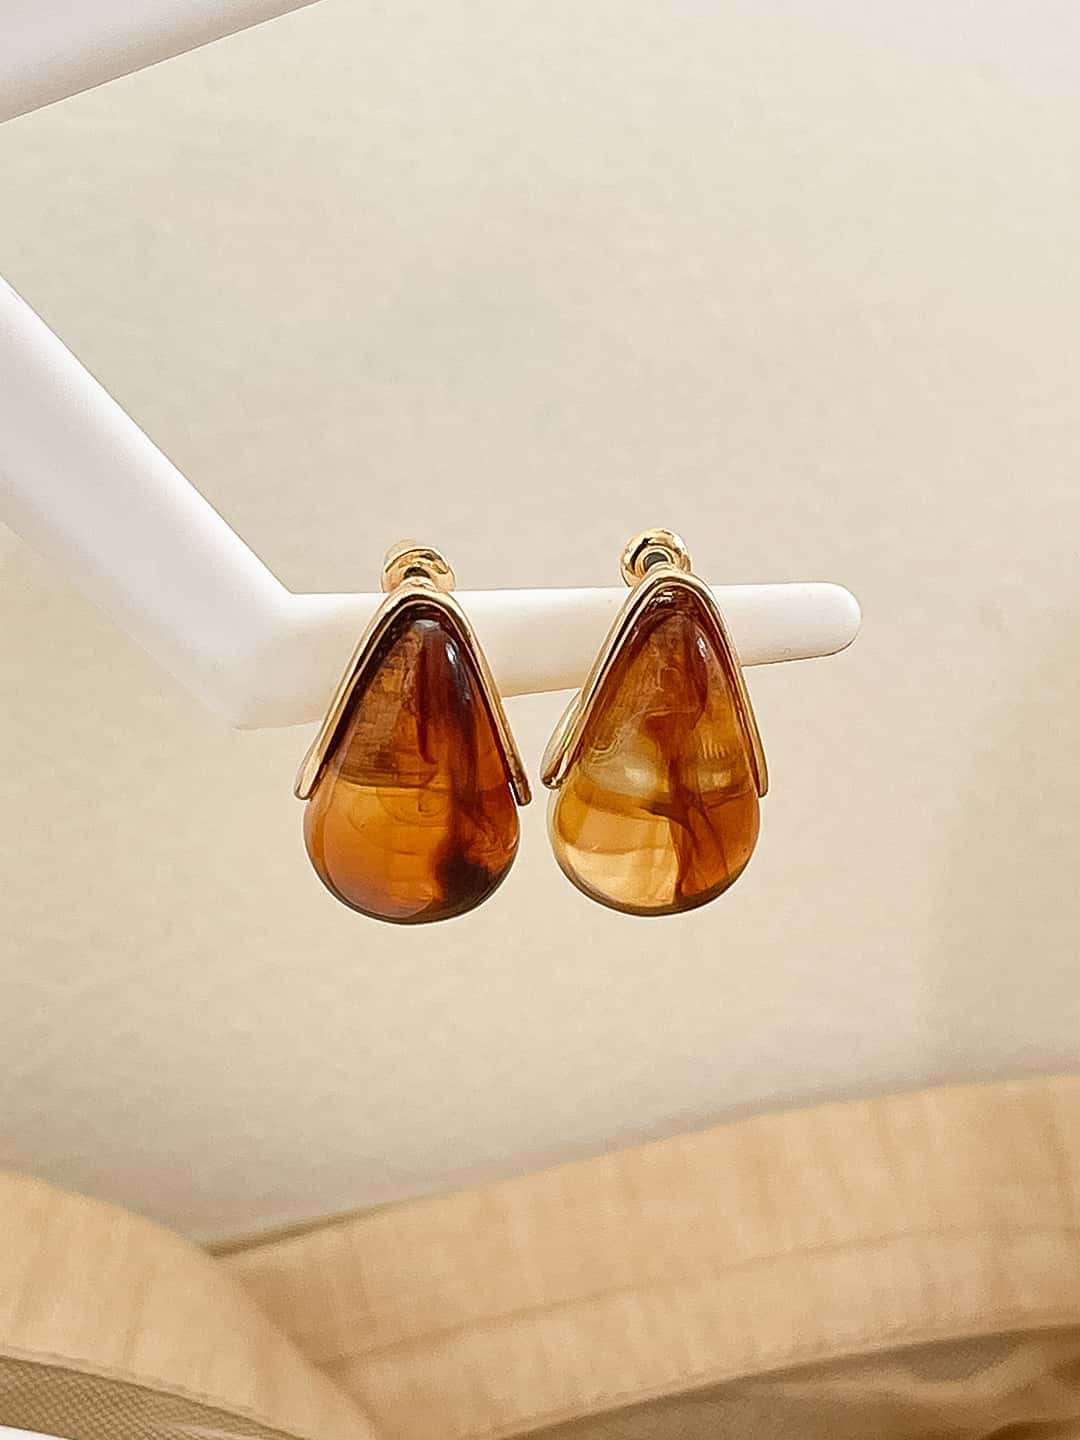 Buy Vintage Opal Cuff Earrings Online - Ishhaara